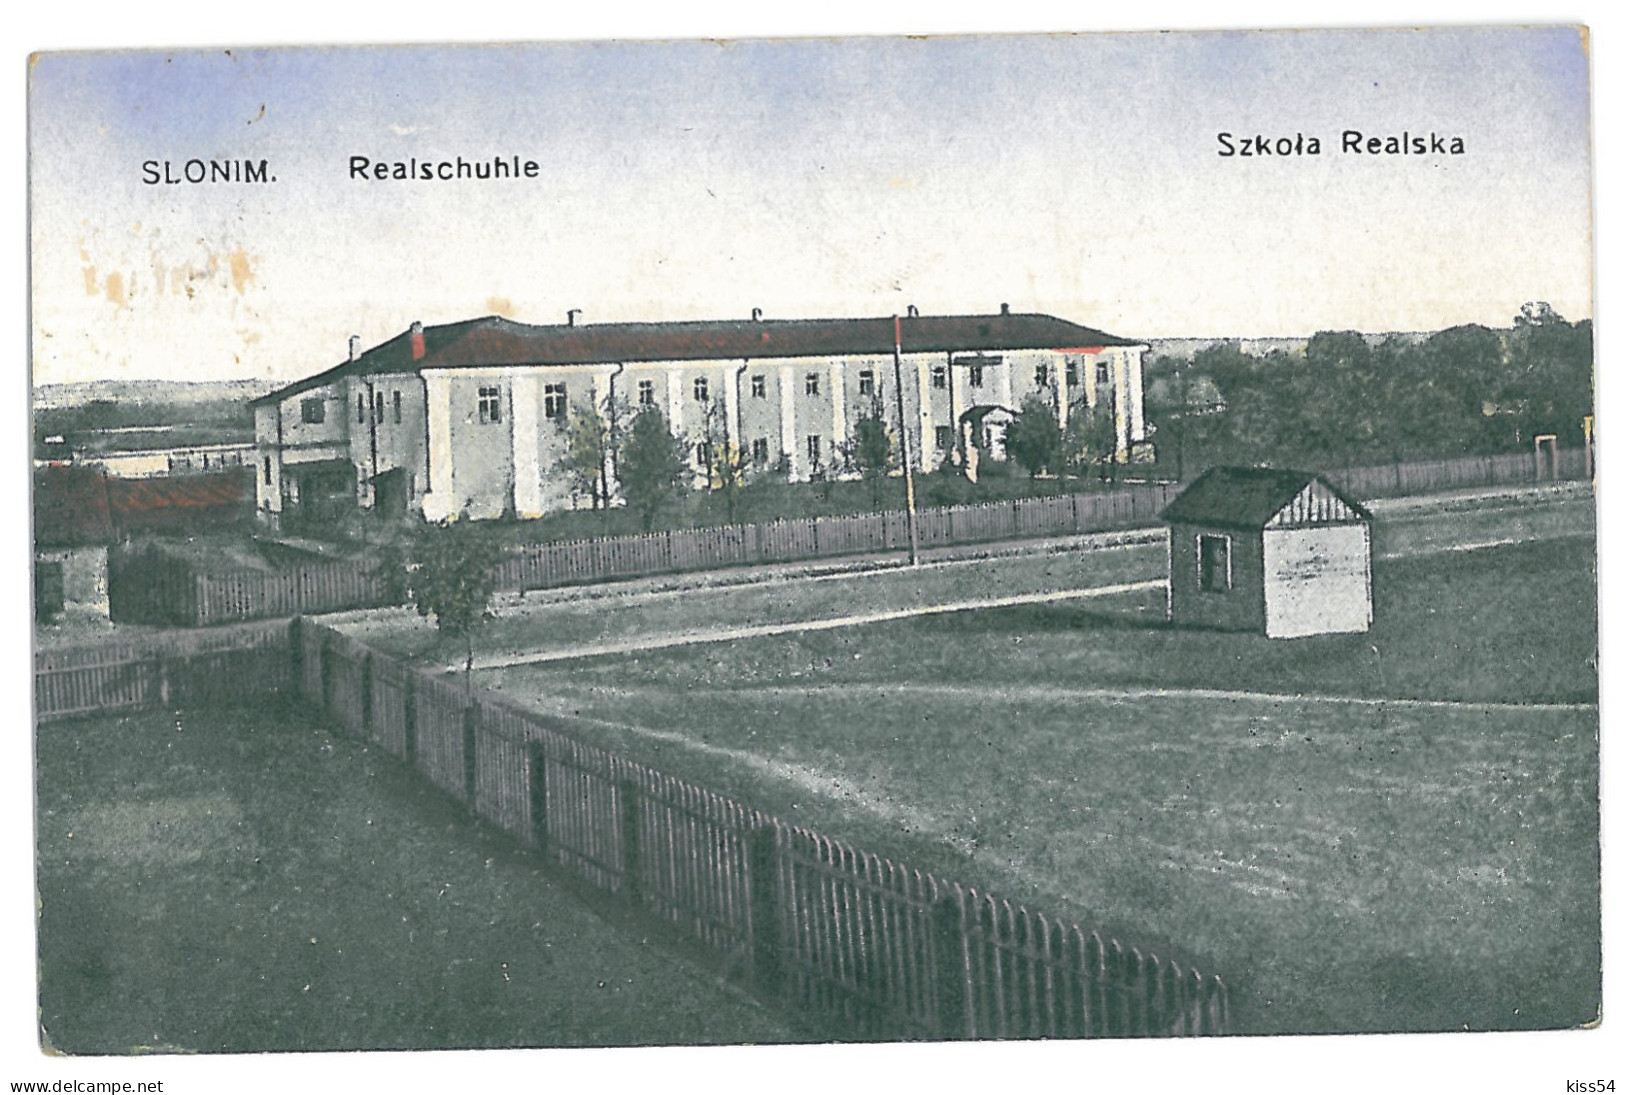 BL 28 - 13815 SLONIM, School, Belarus - Old Postcard, CENSOR - Used - 1916 - Bielorussia